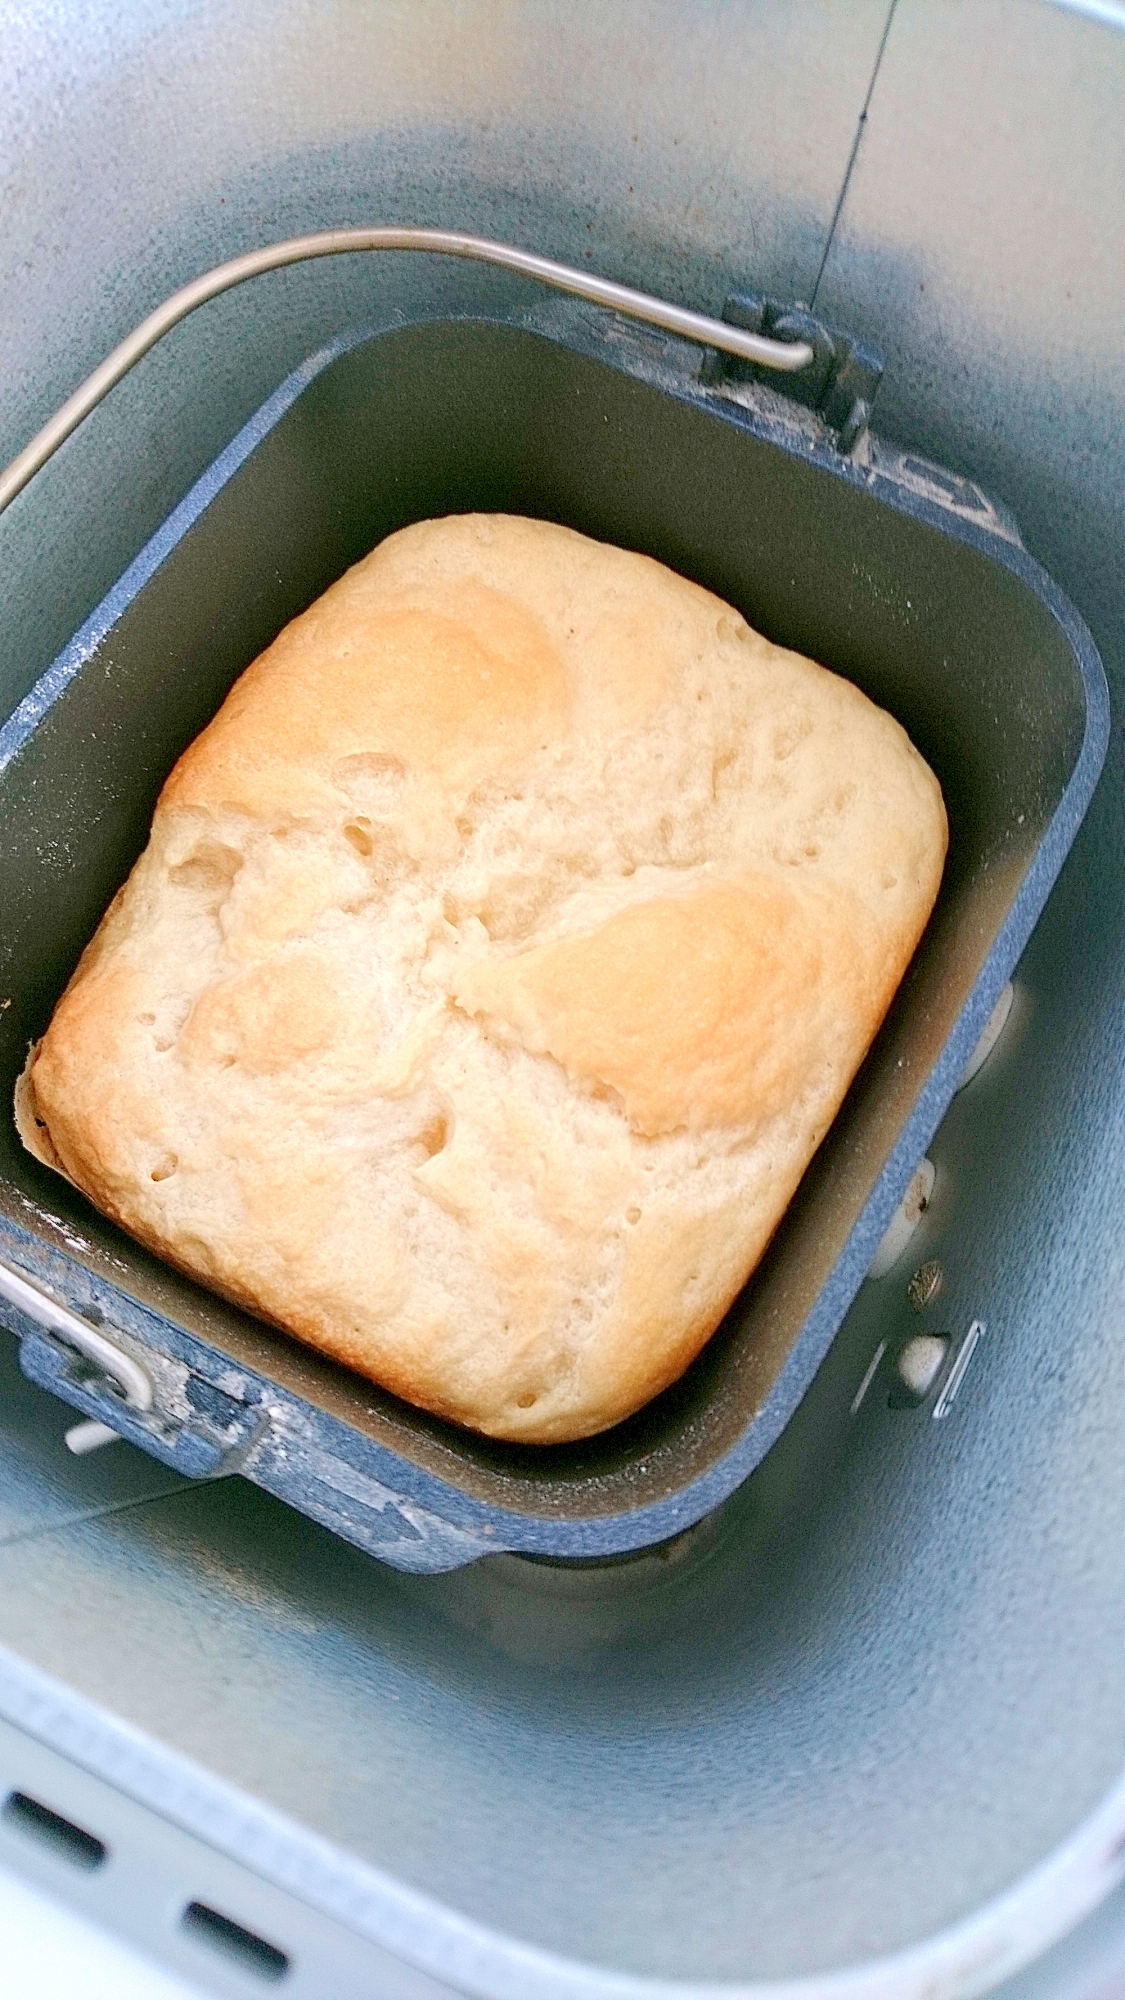 ノンオイルで作るカスピ海ヨーグルト入りの食パン